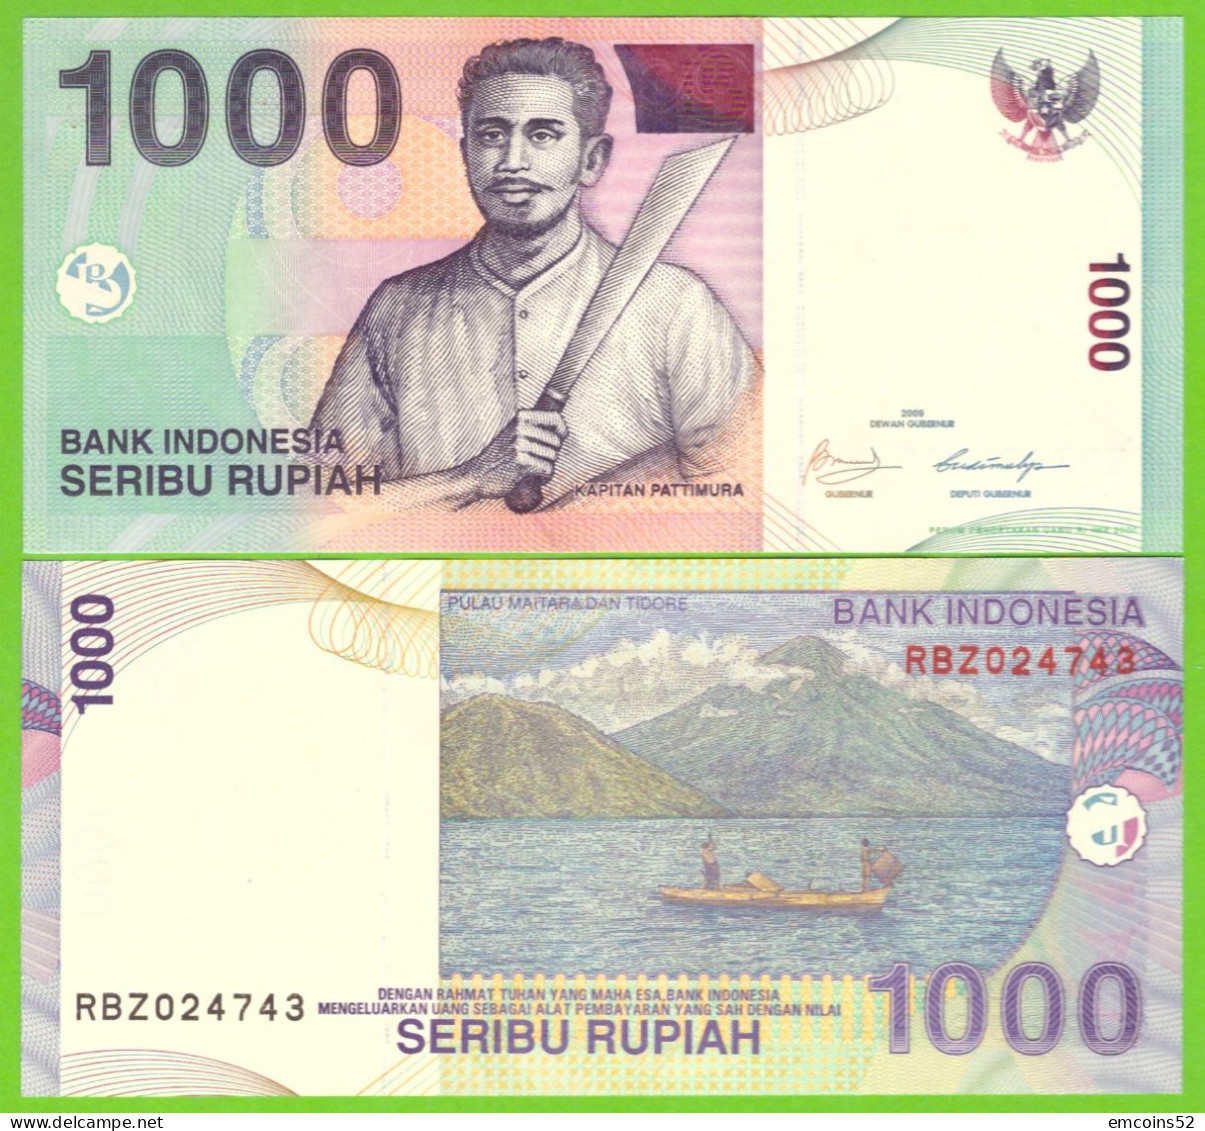 INDONESIA 1000 RUPIAH 2000/2009  P-141j UNC - Indonesië